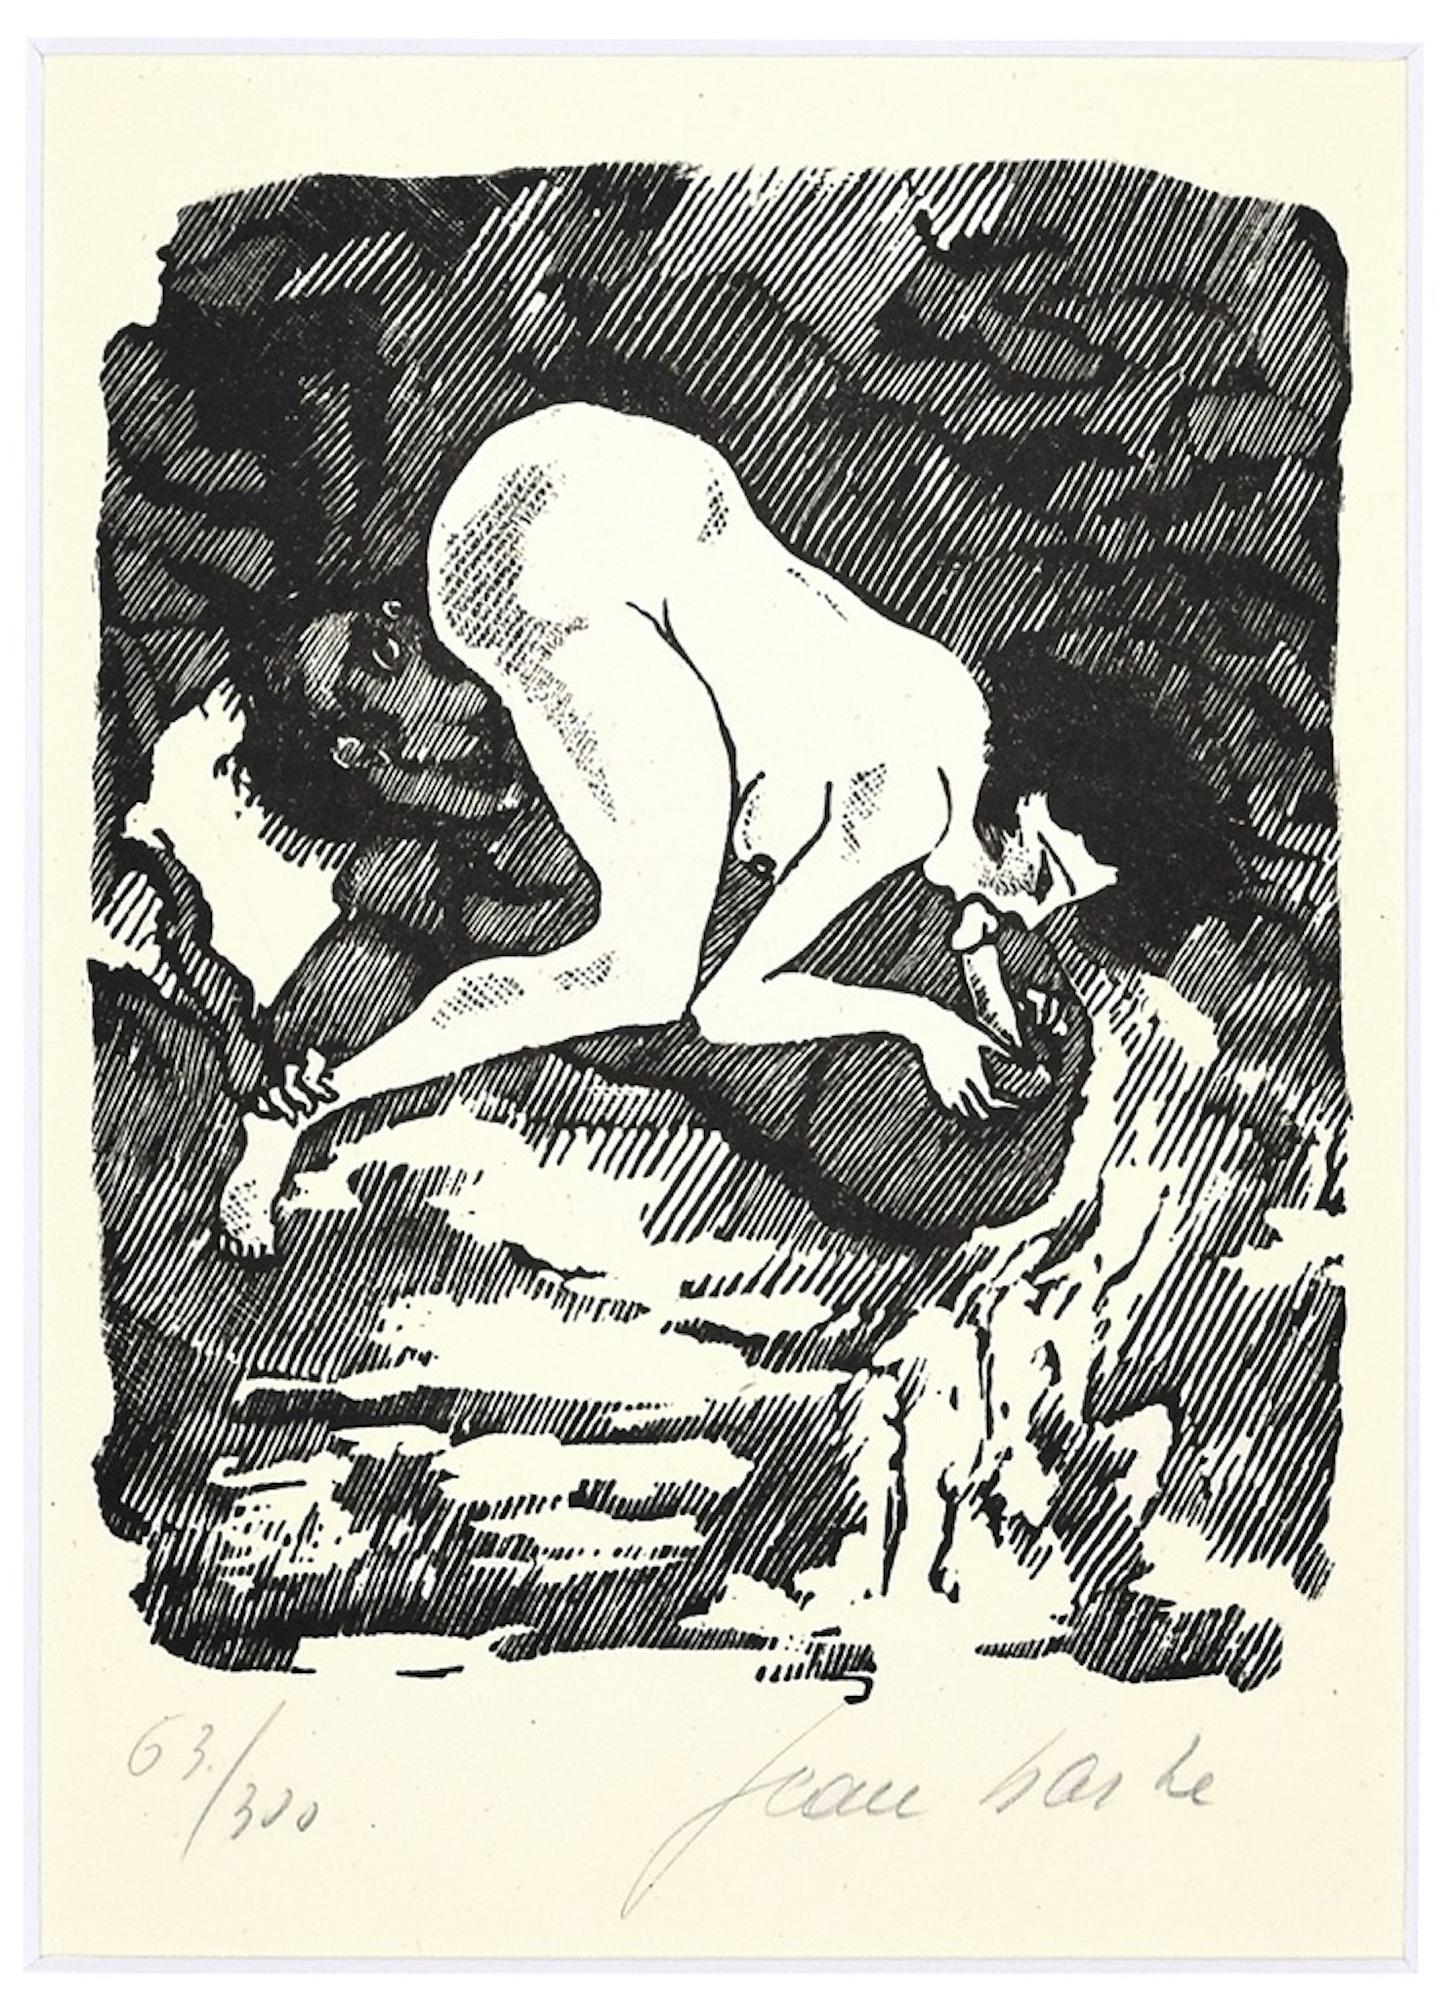 Pleasure est une magnifique linogravure en noir et blanc sur papier ivoire, réalisée en 1945 par Mino Maccari.

Signé à la main "Jean Barbe" et numéroté au crayon dans la marge inférieure. Édition de 300 exemplaires.

Une magnifique planche des 16